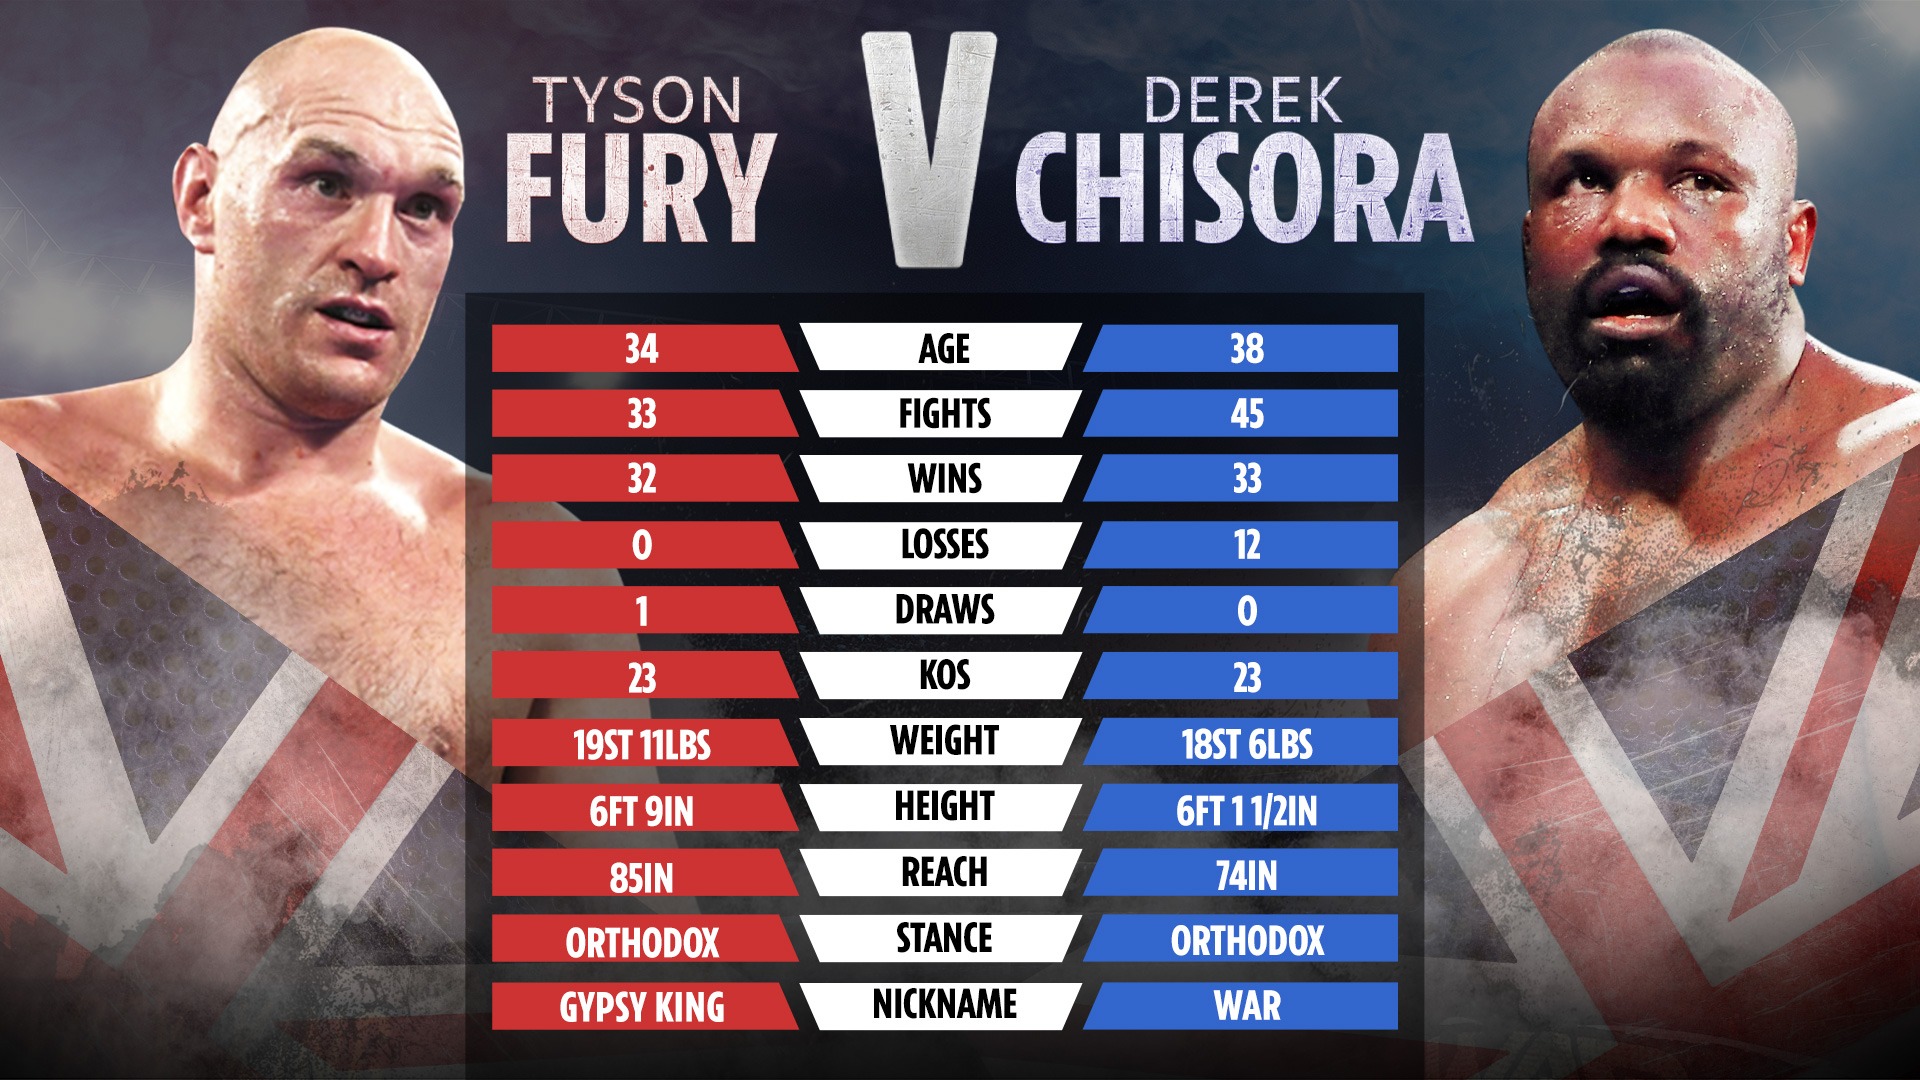 , Ukrainian boxer Denis Berinchyk wears full military uniform for ring walk on Tyson Fury vs Derek Chisora undercard